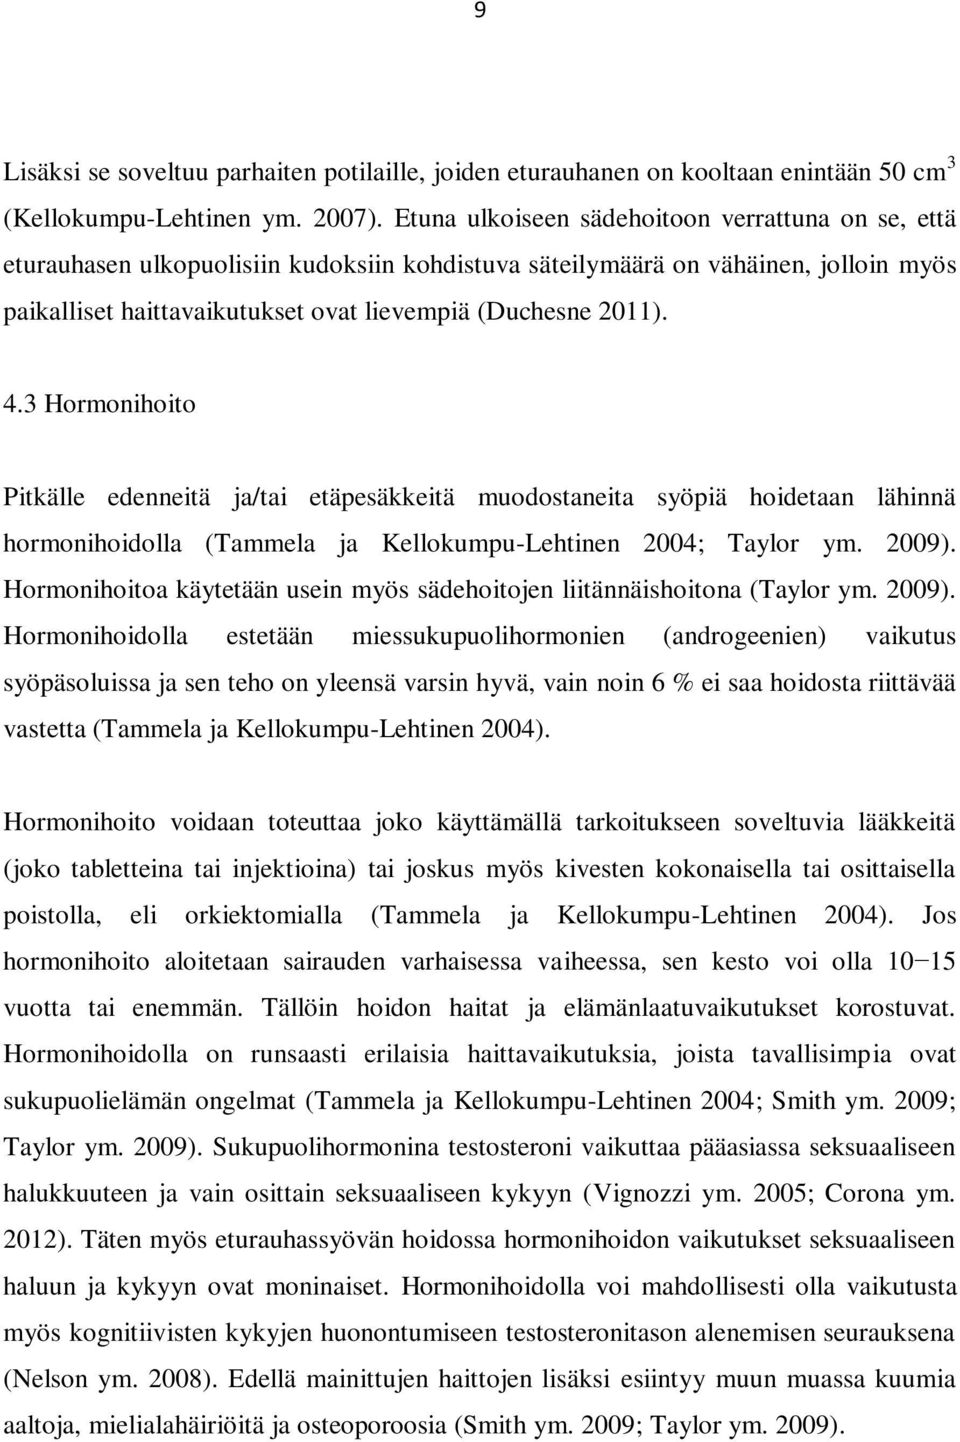 4.3 Hormonihoito Pitkälle edenneitä ja/tai etäpesäkkeitä muodostaneita syöpiä hoidetaan lähinnä hormonihoidolla (Tammela ja Kellokumpu-Lehtinen 2004; Taylor ym. 2009).